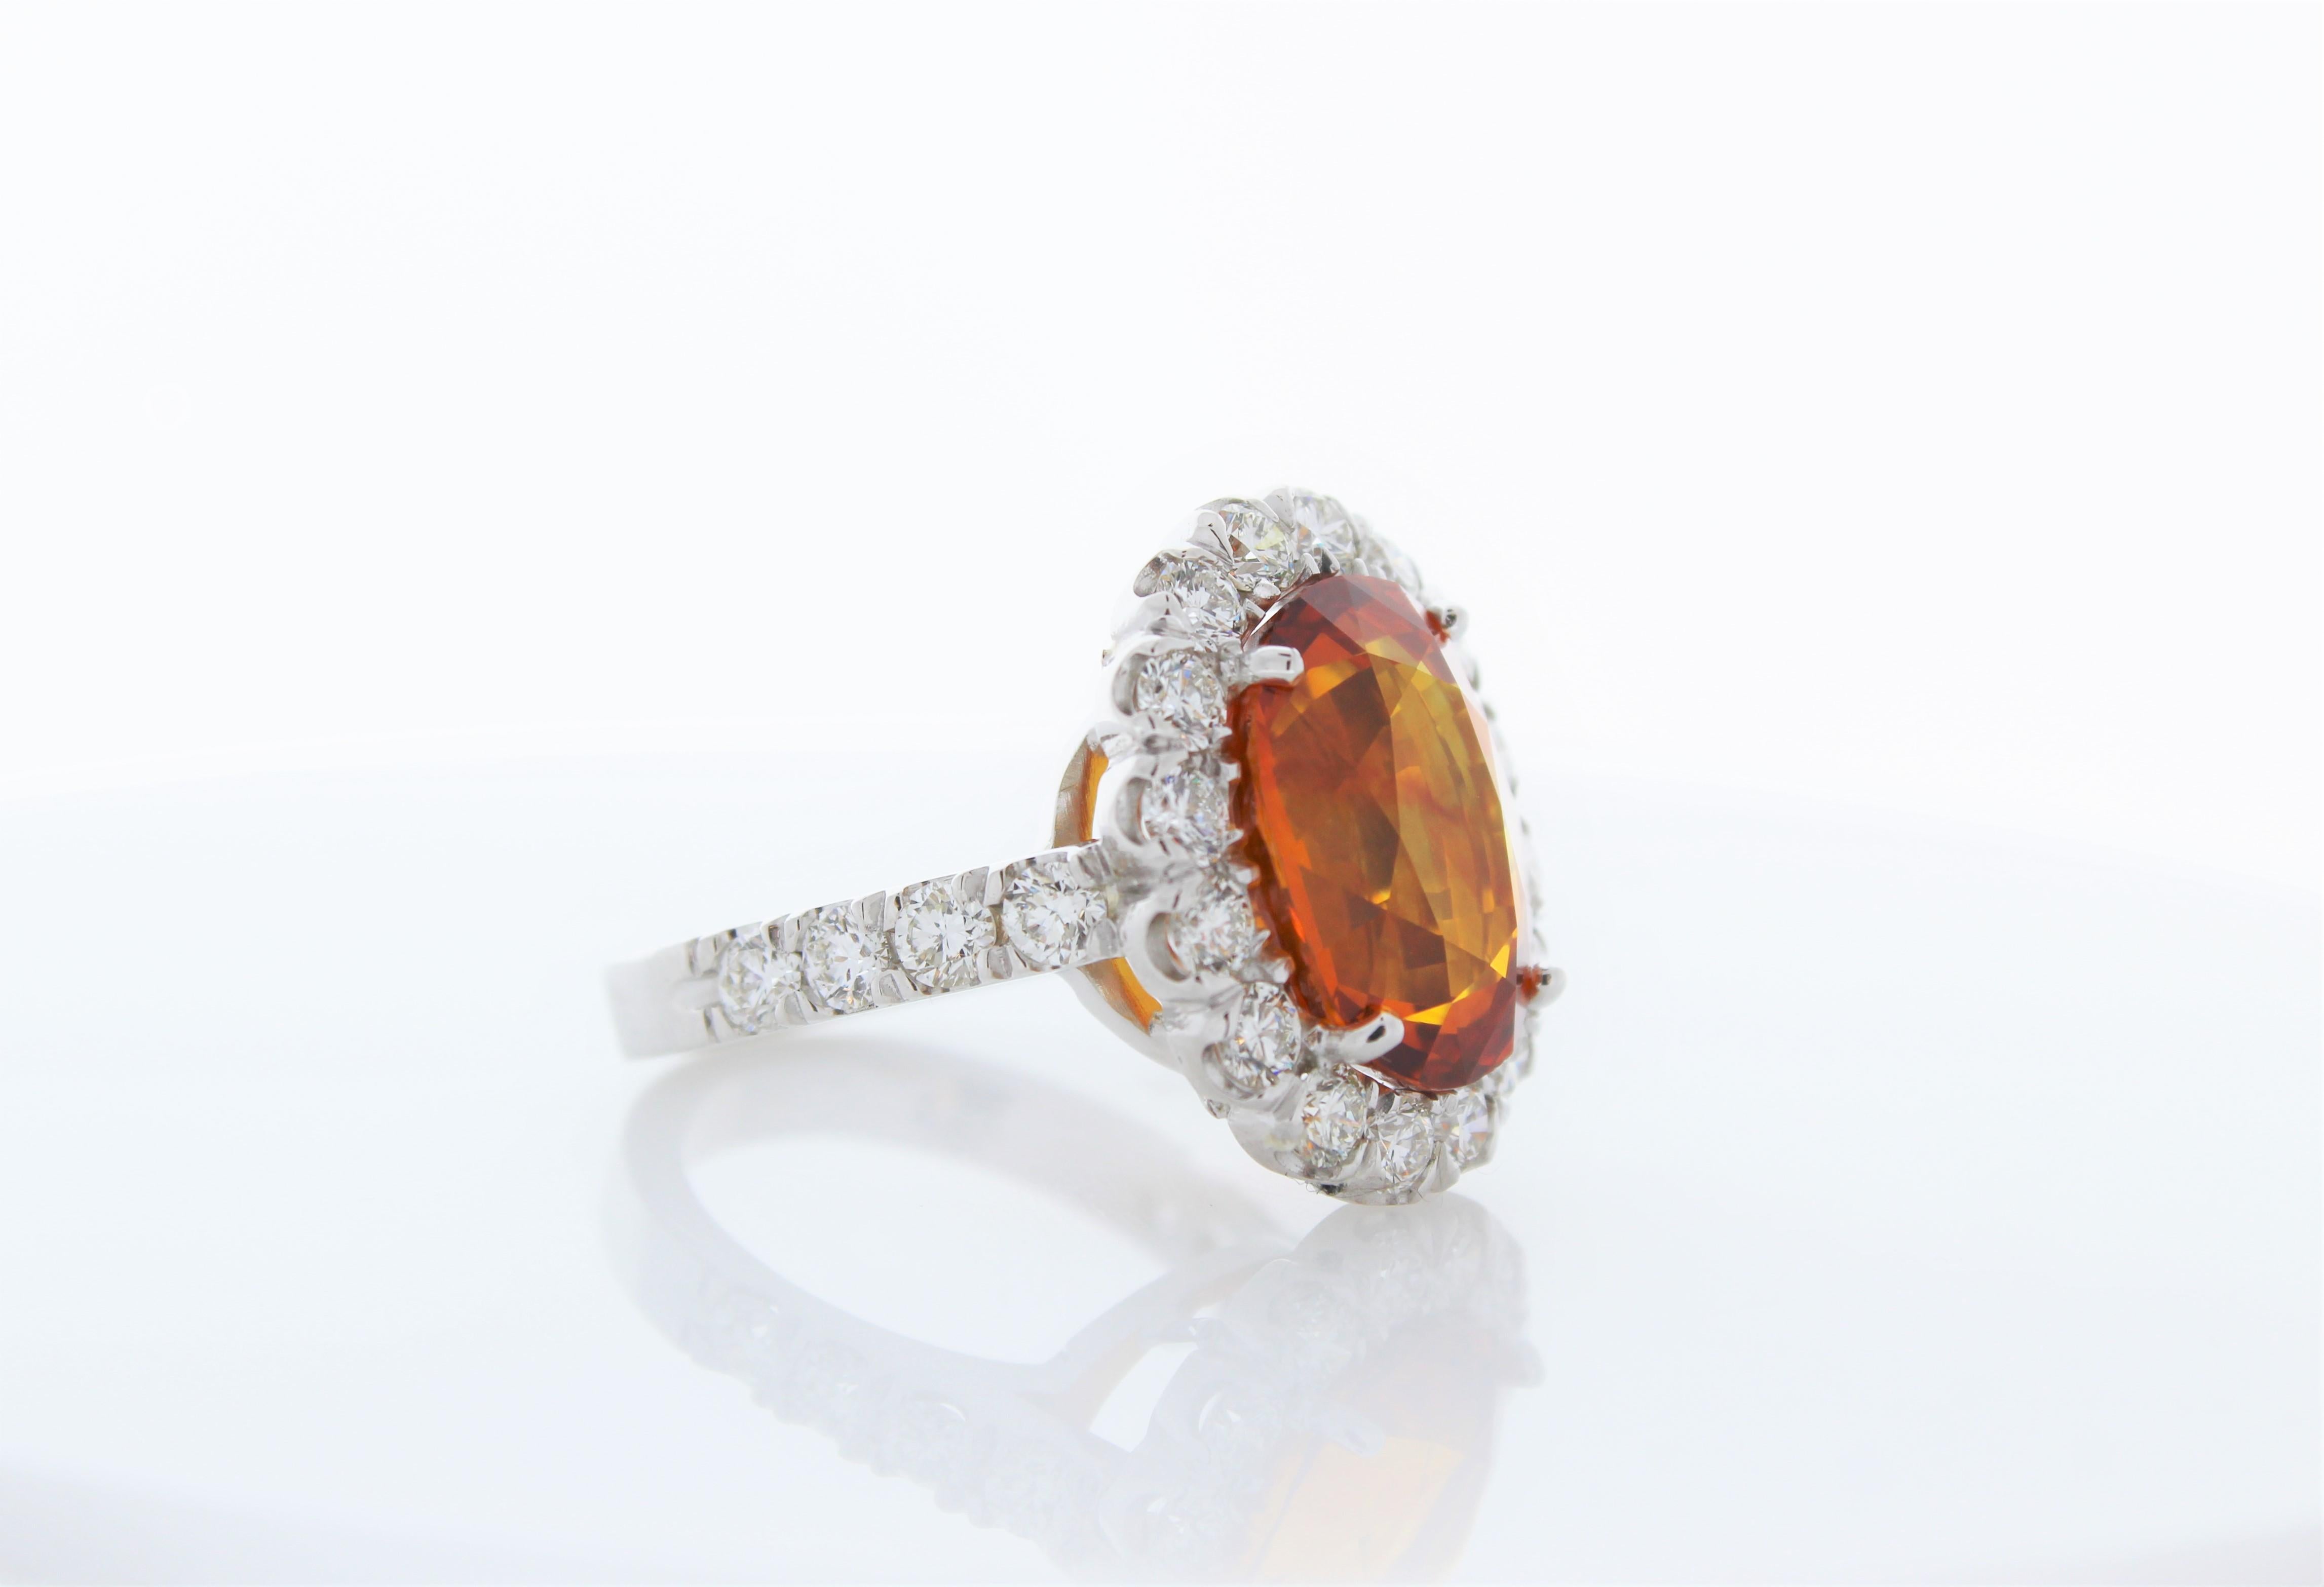 Dieser majestätische und elegante Edelsteinring ist von Anfang bis Ende spektakulär. Er weist ein reich gesättigtes Orange von 10,47 Karat auf. Die Größe dieses orangefarbenen Saphirs ist der Clou des Rings. Eine schillernde Reihe runder Brillanten